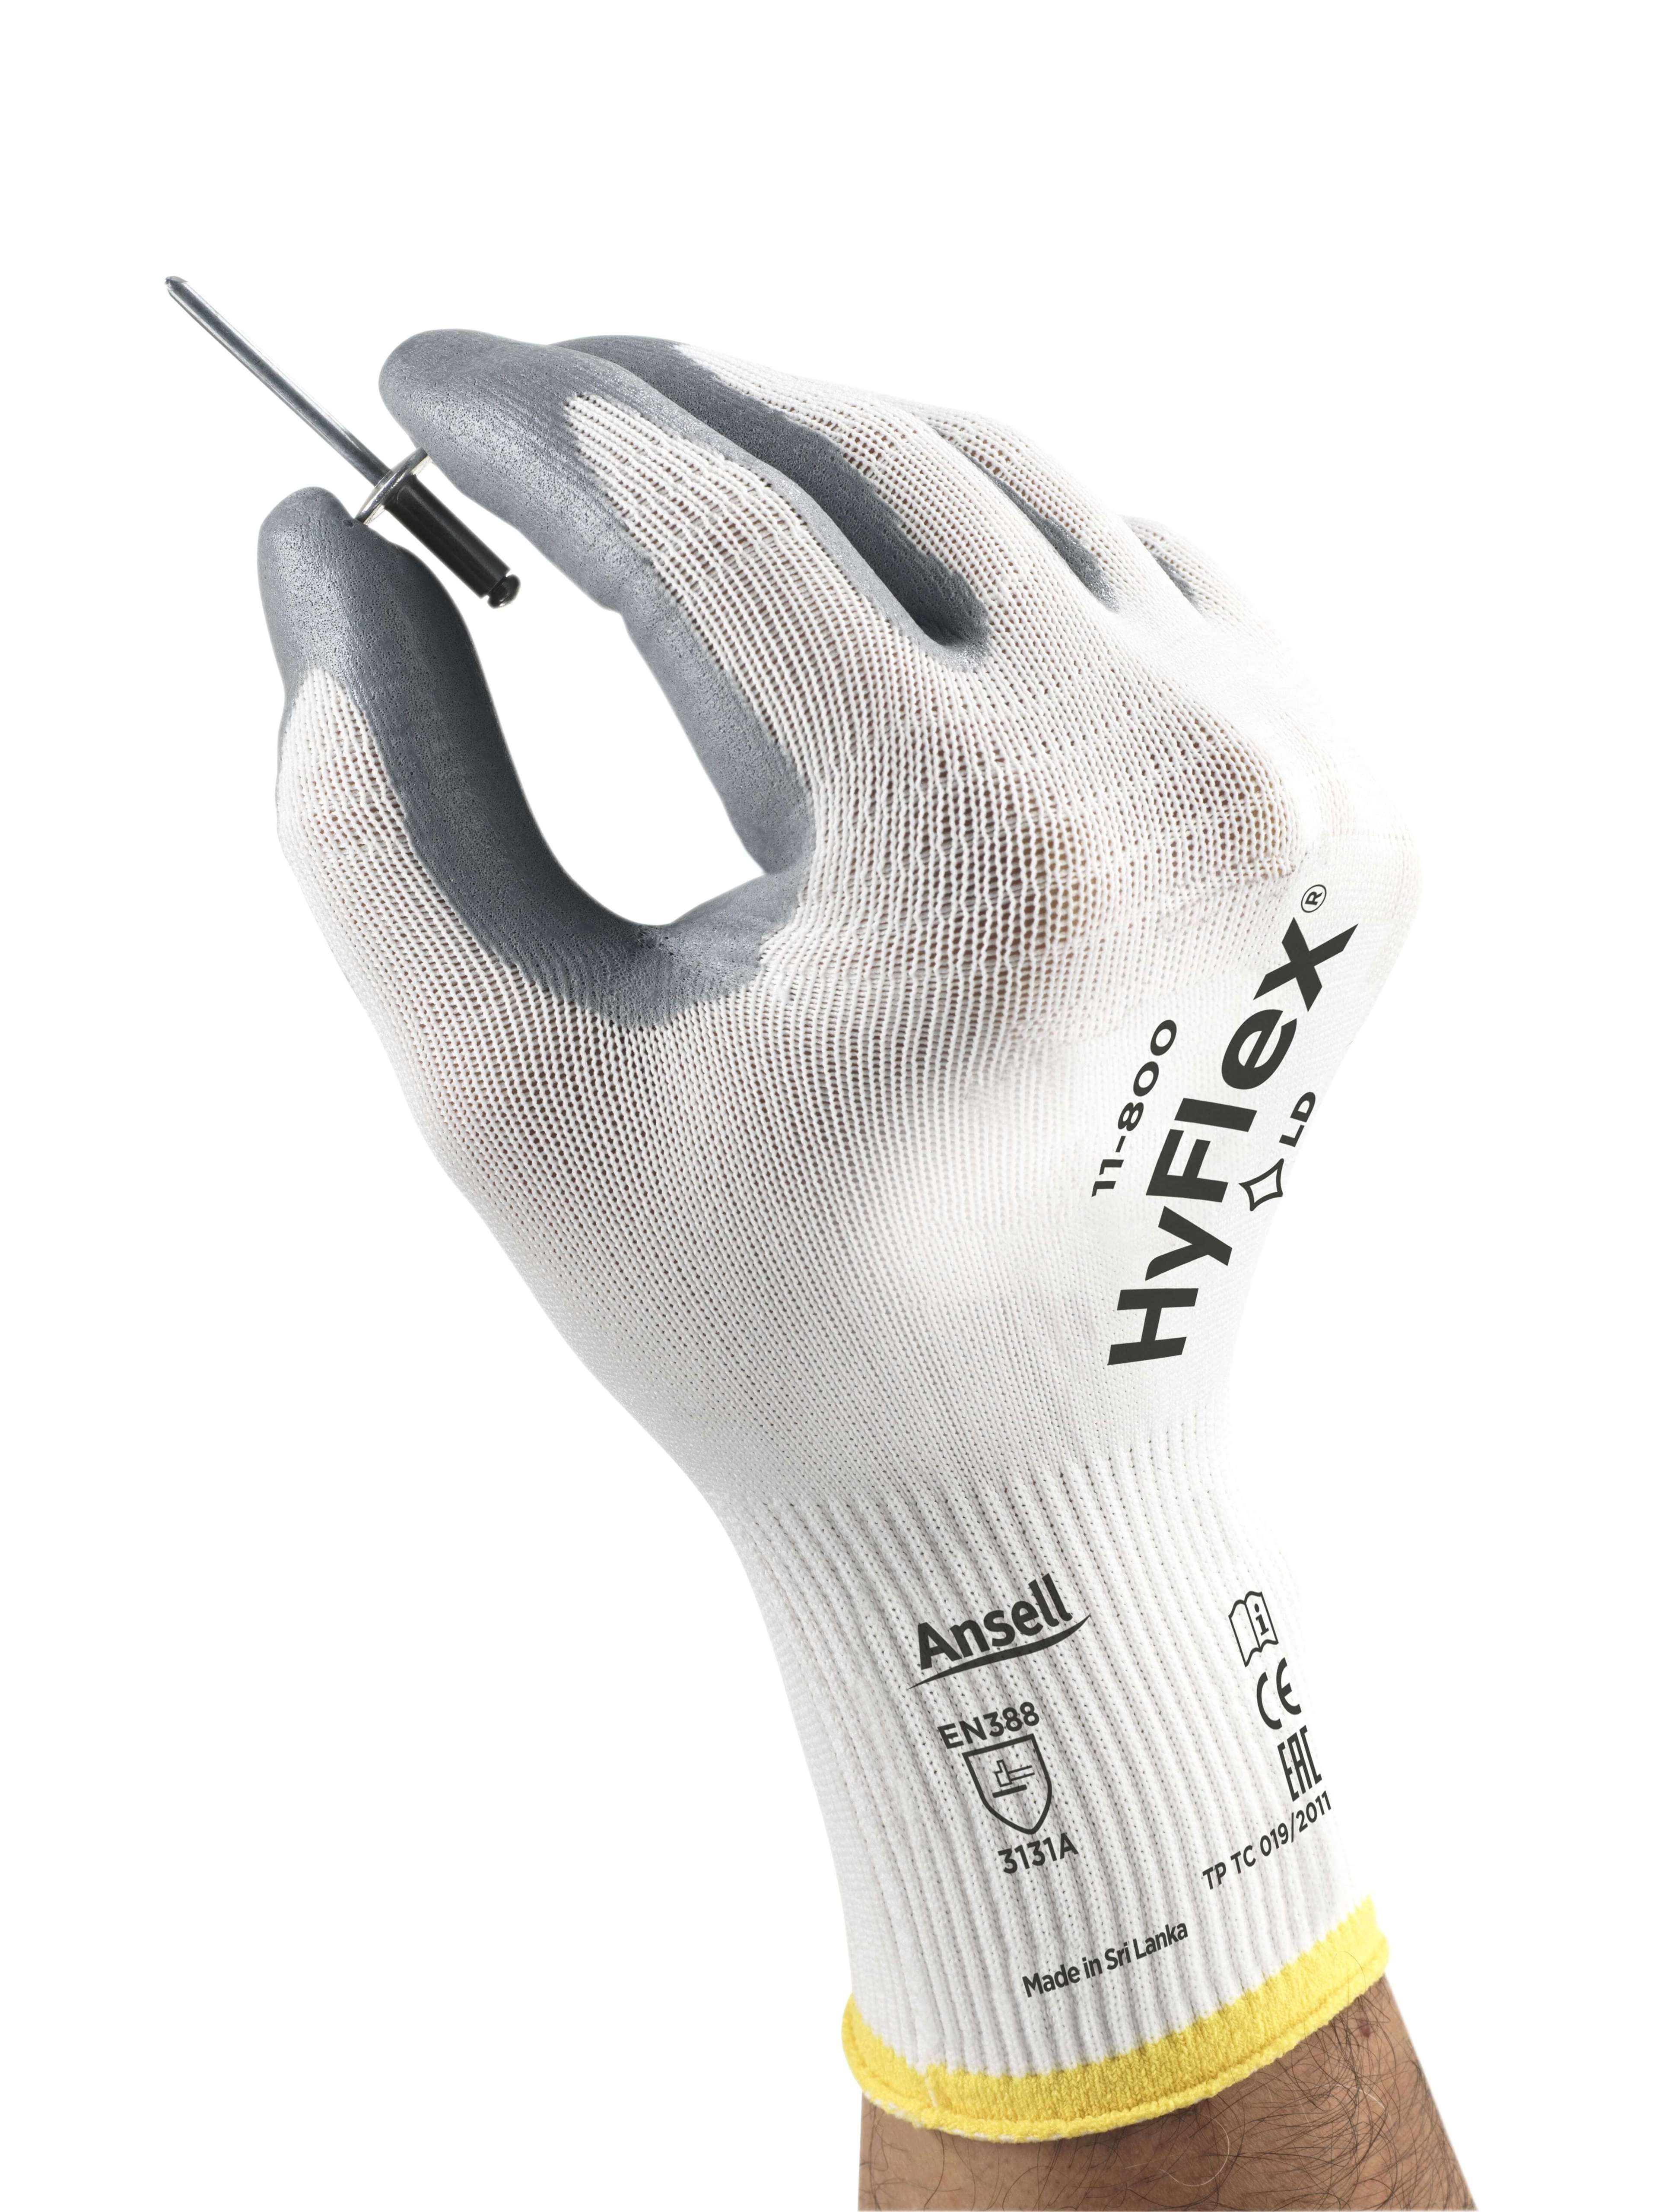 HyFlex 11-800 Work Gloves - 12 Pairs